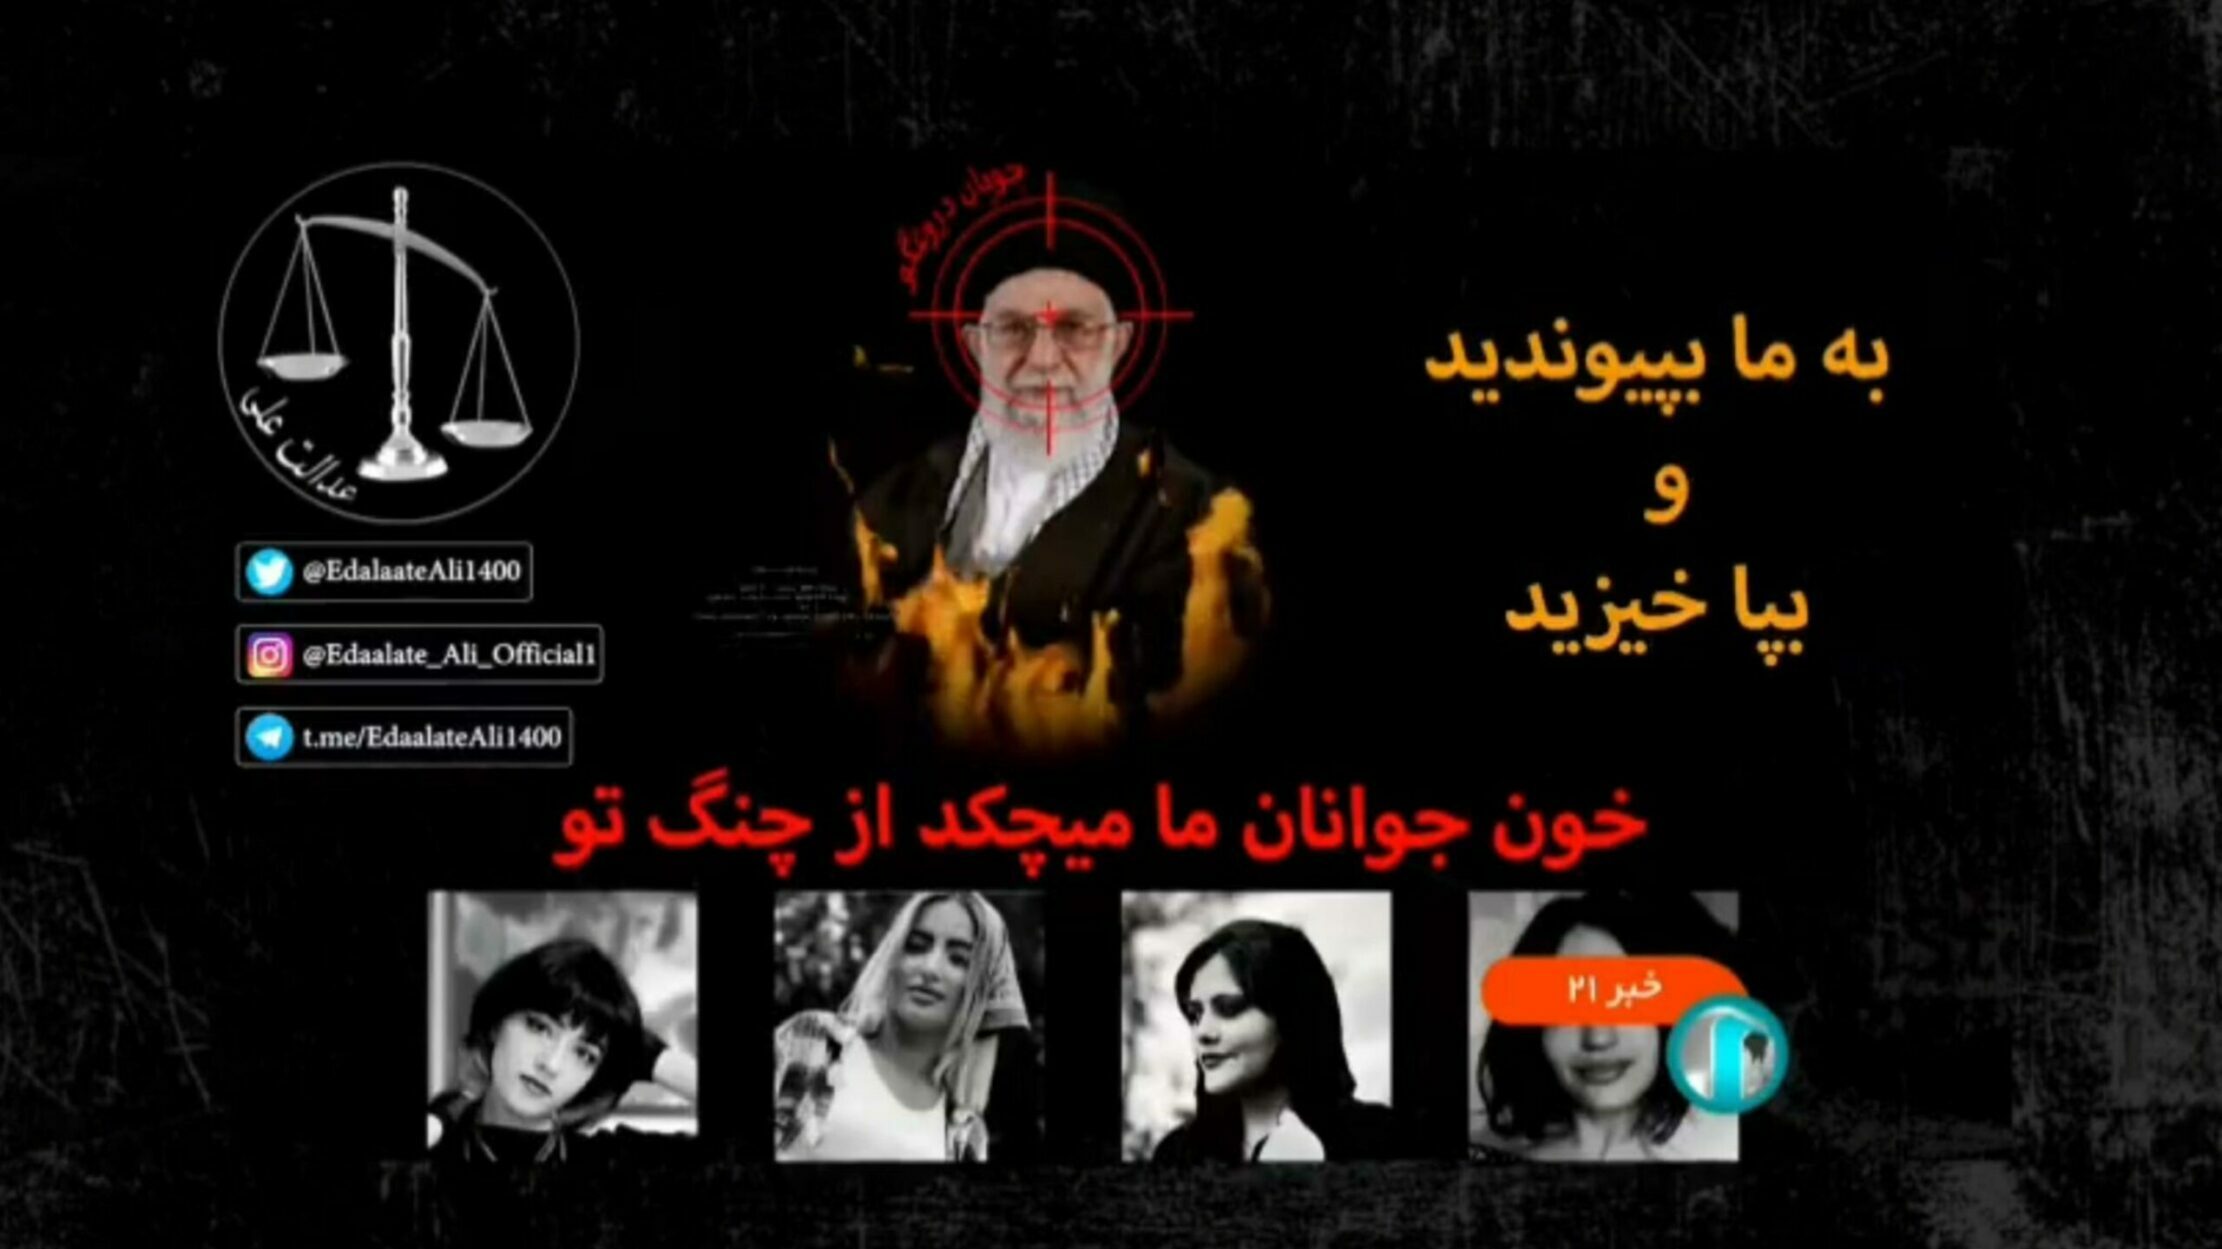 [VIDEO] La Tv iraniana subisce un attacco hacker mentre parla Alì Khamenei: "Il sangue della nostra giovinezza ti gocciola dalle dita"